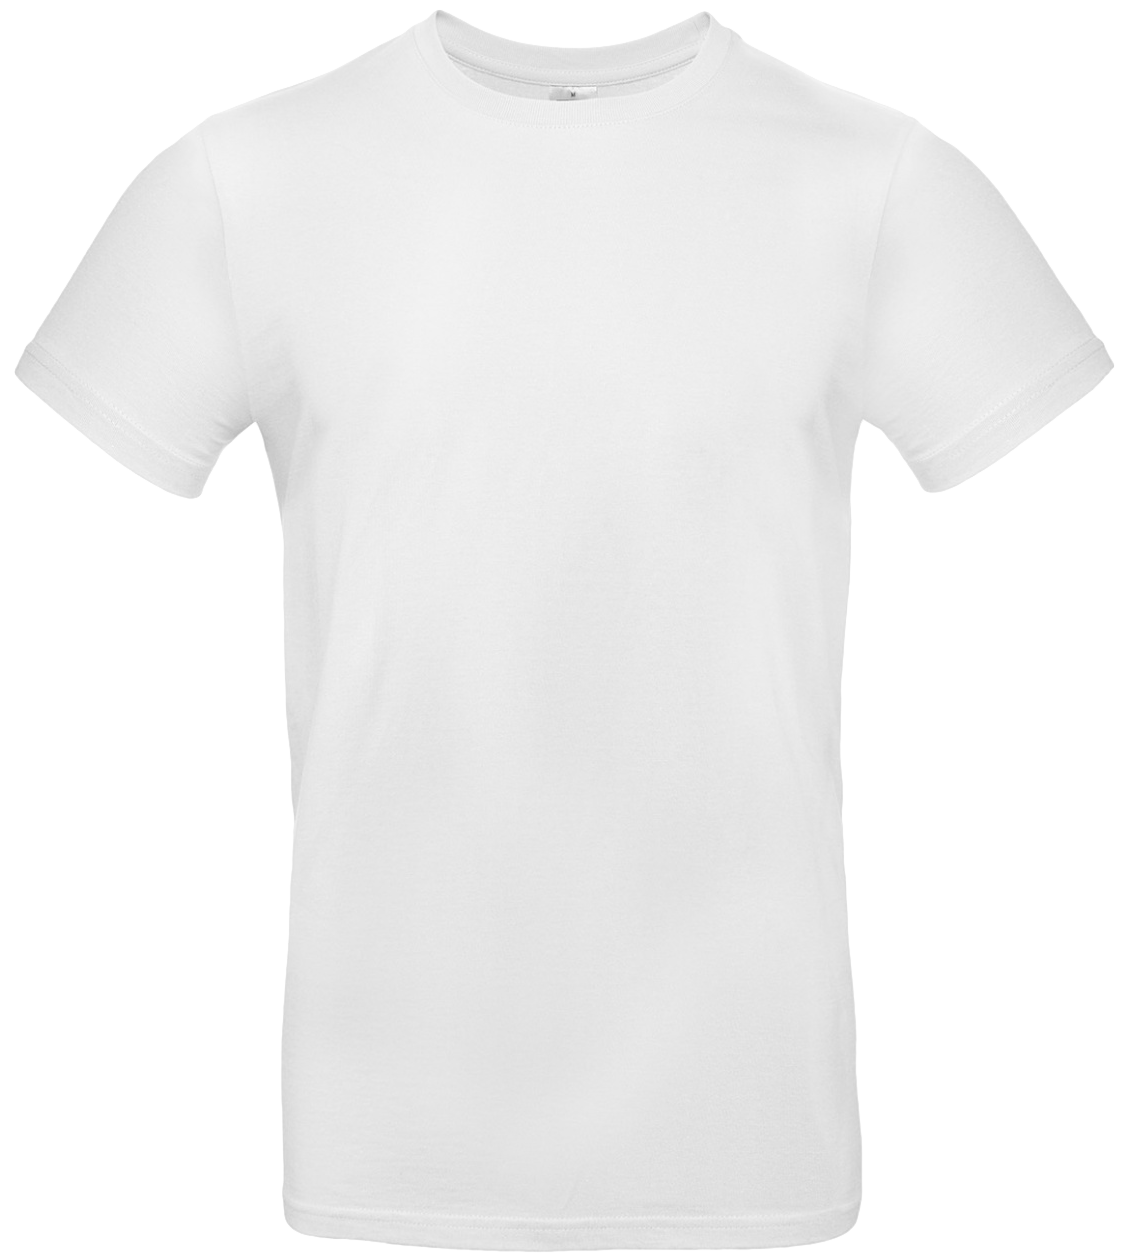 T-shirt E#190 Vit 48